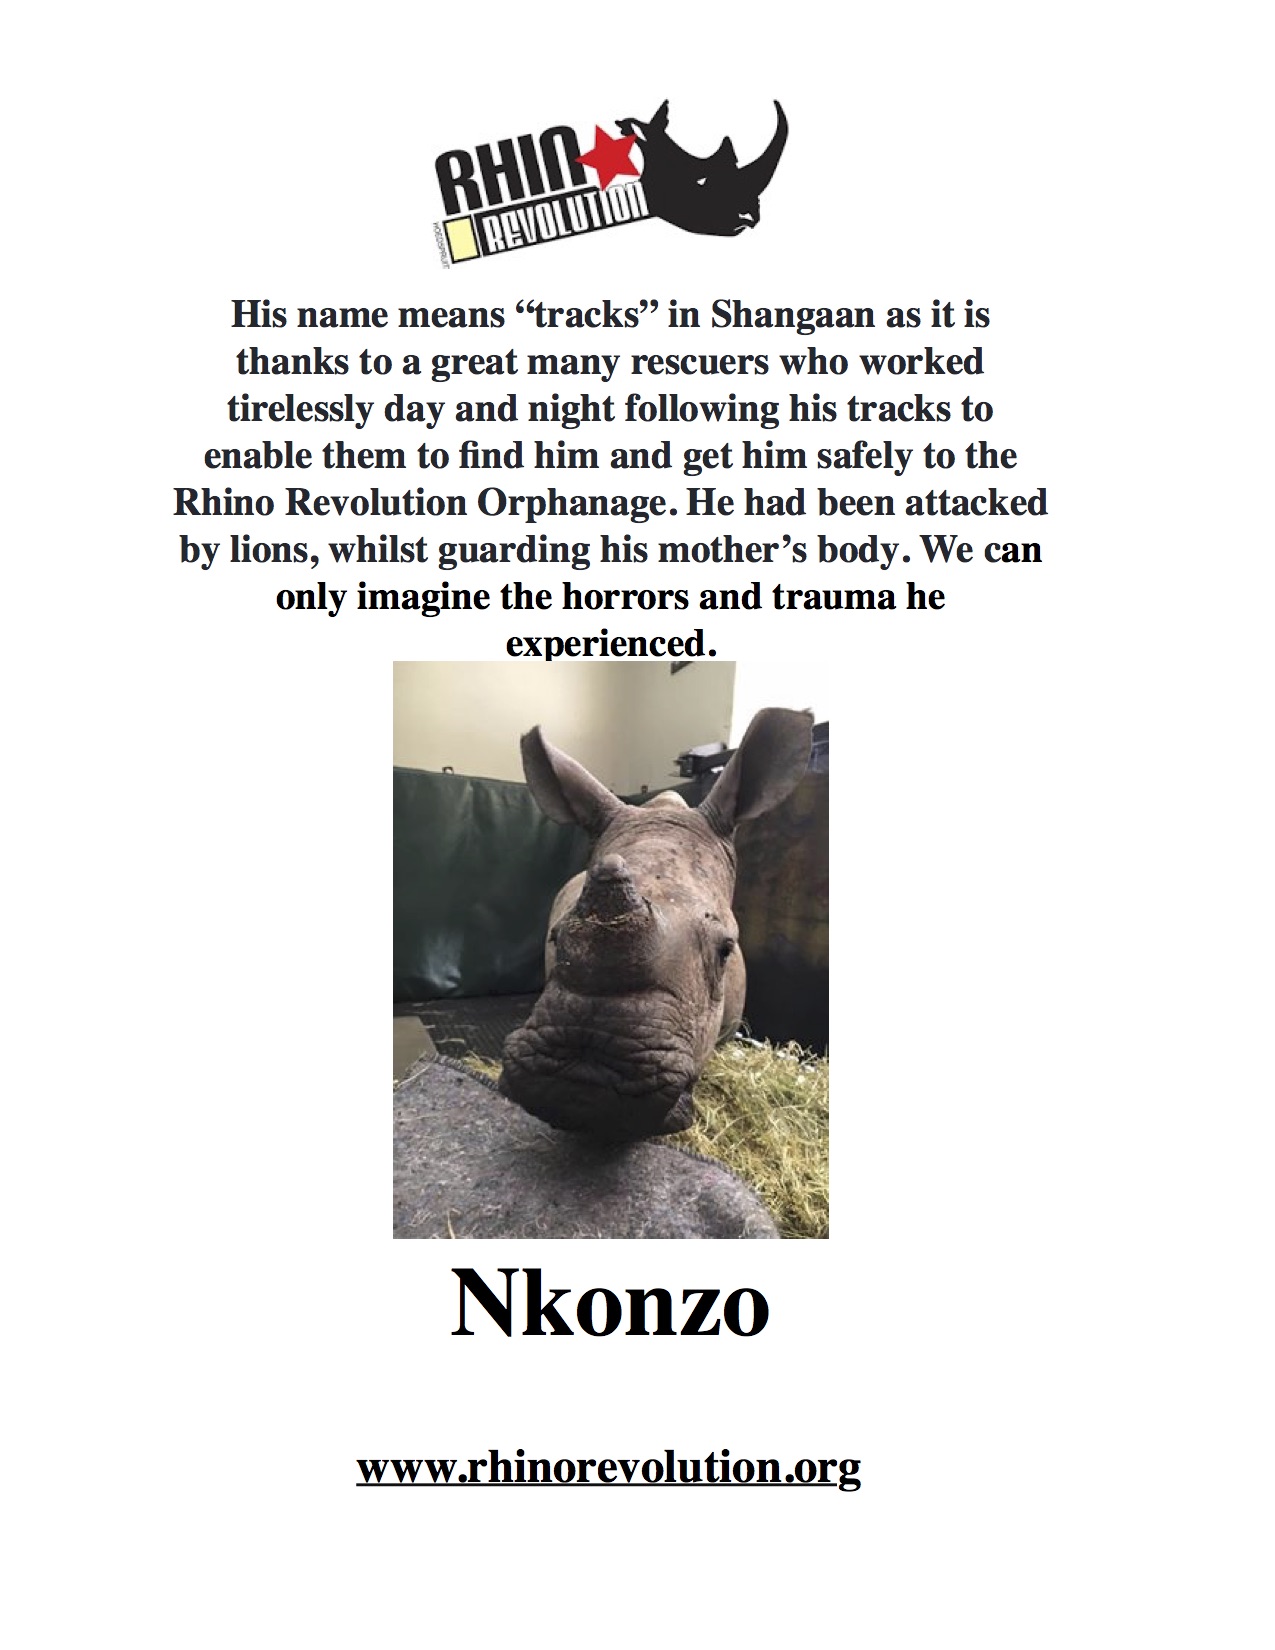 Nkonzo